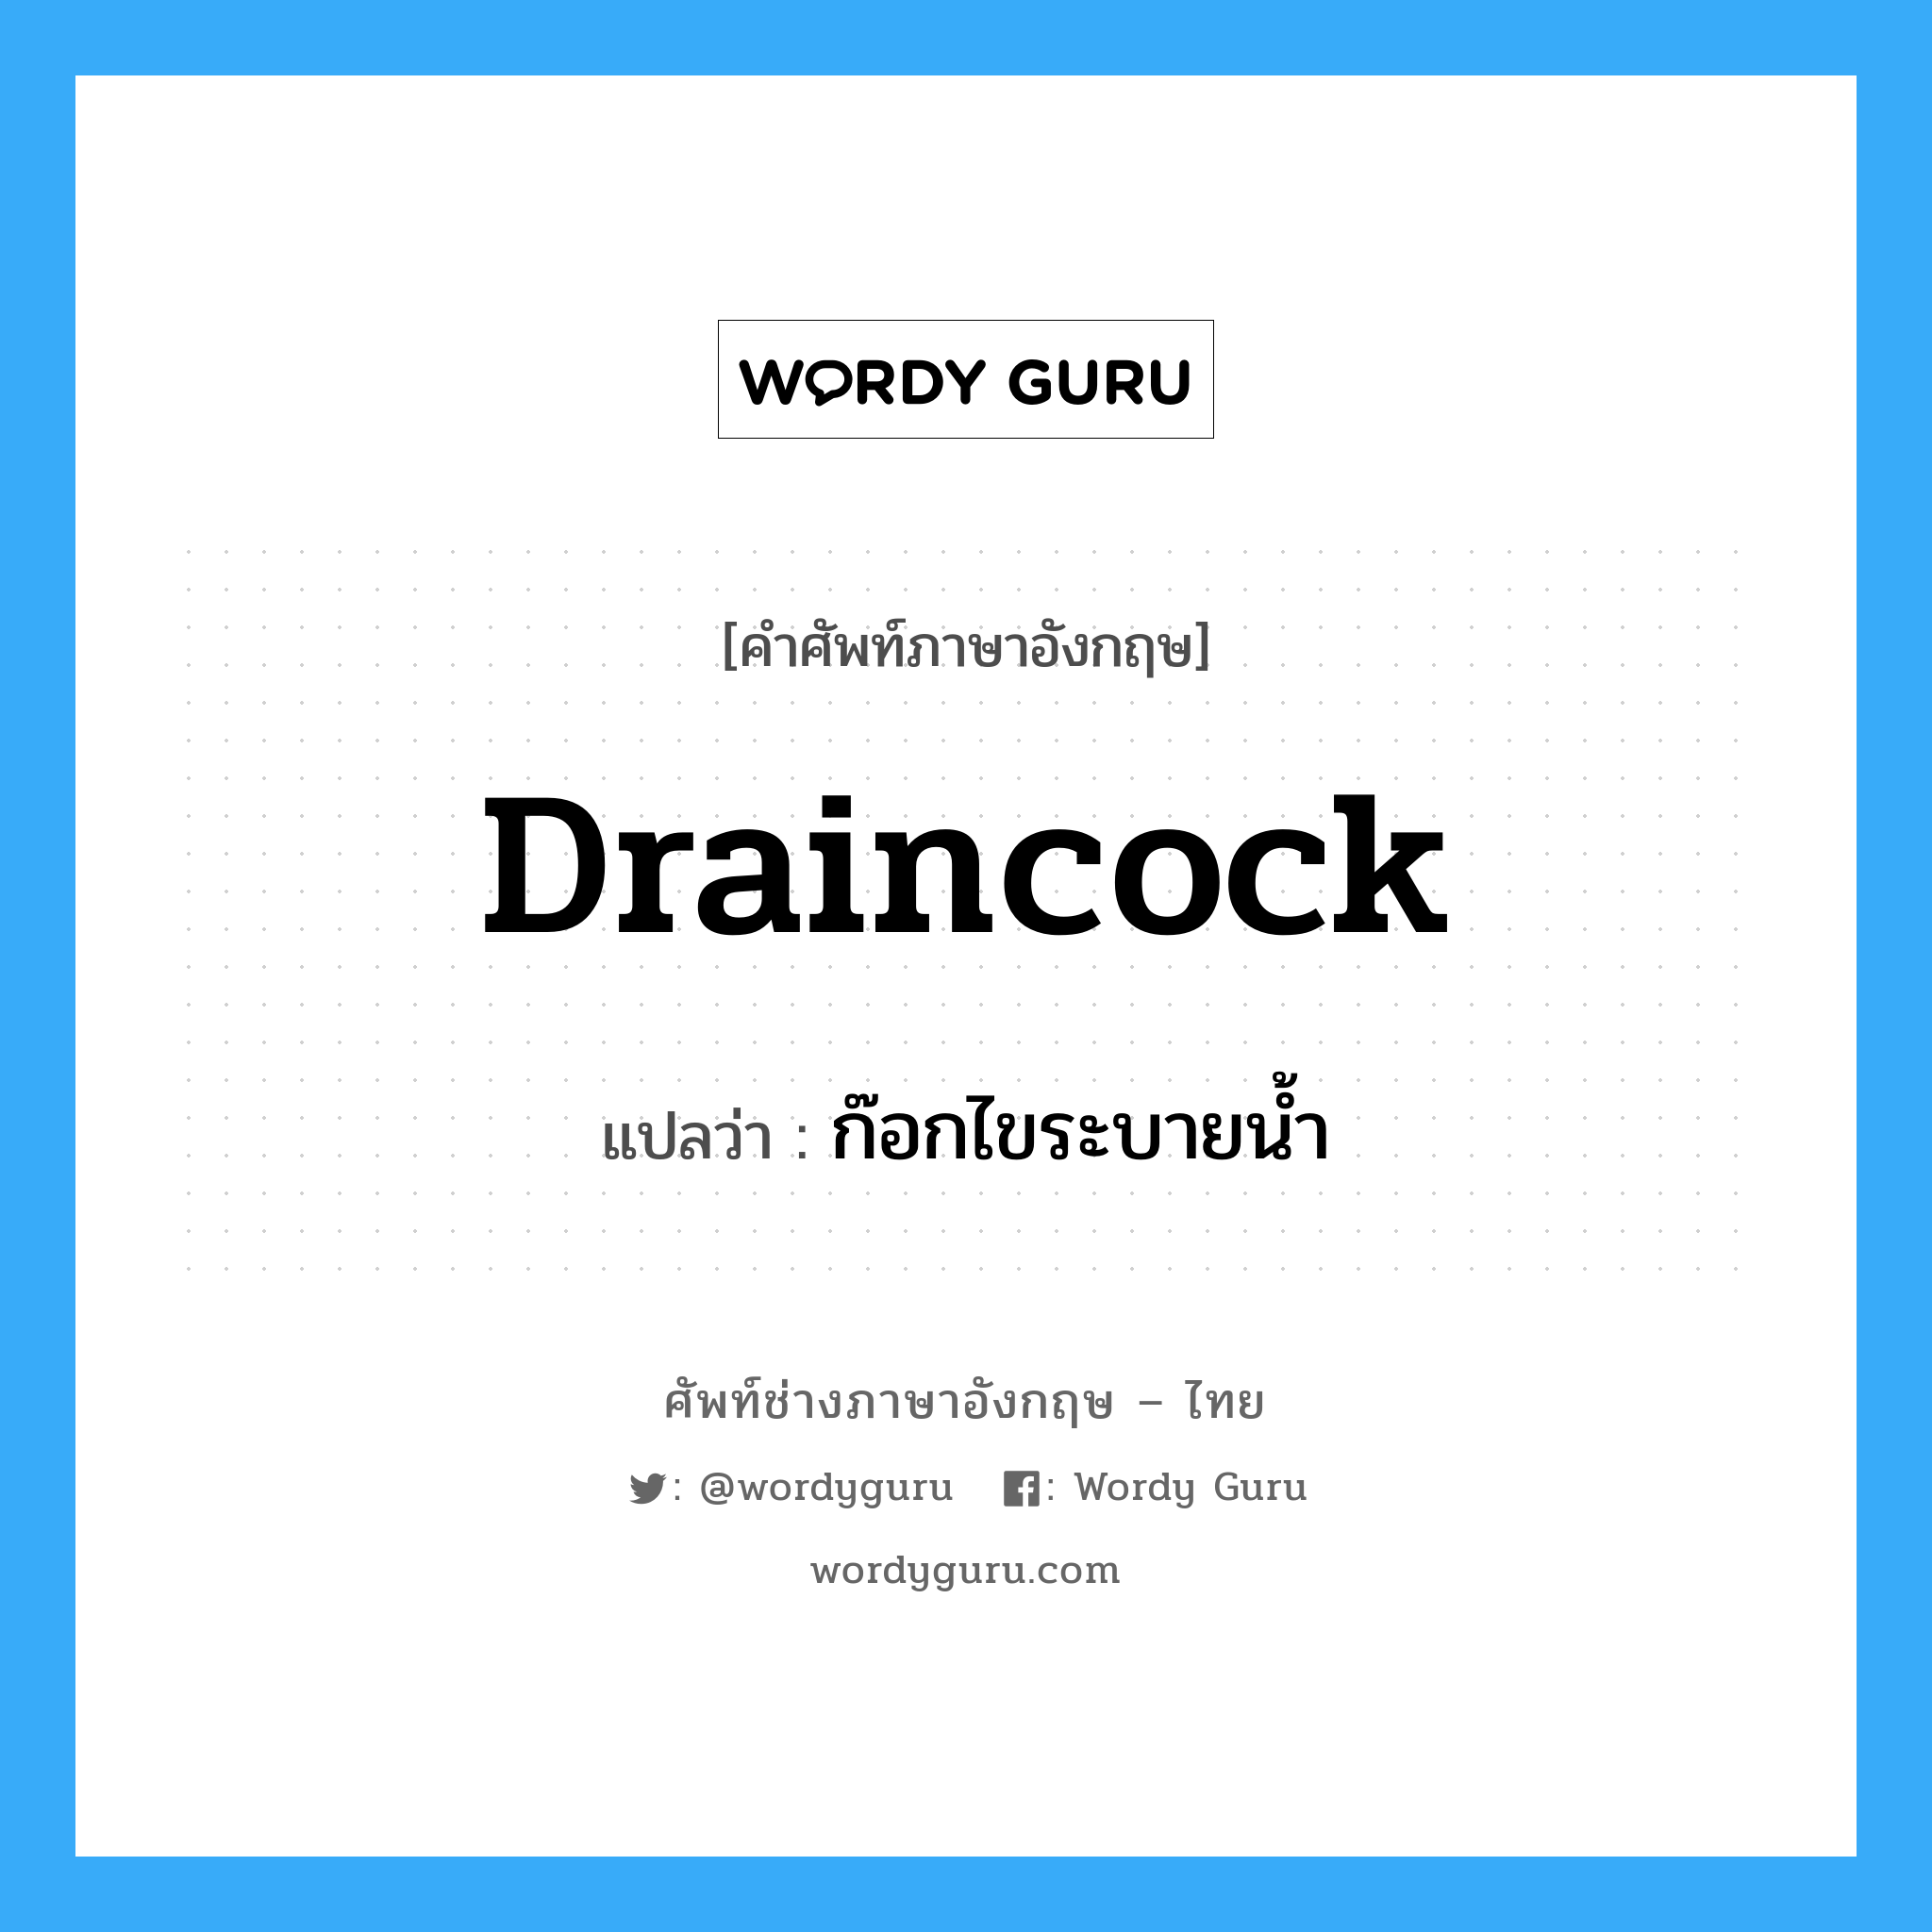 draincock แปลว่า?, คำศัพท์ช่างภาษาอังกฤษ - ไทย draincock คำศัพท์ภาษาอังกฤษ draincock แปลว่า ก๊อกไขระบายน้ำ